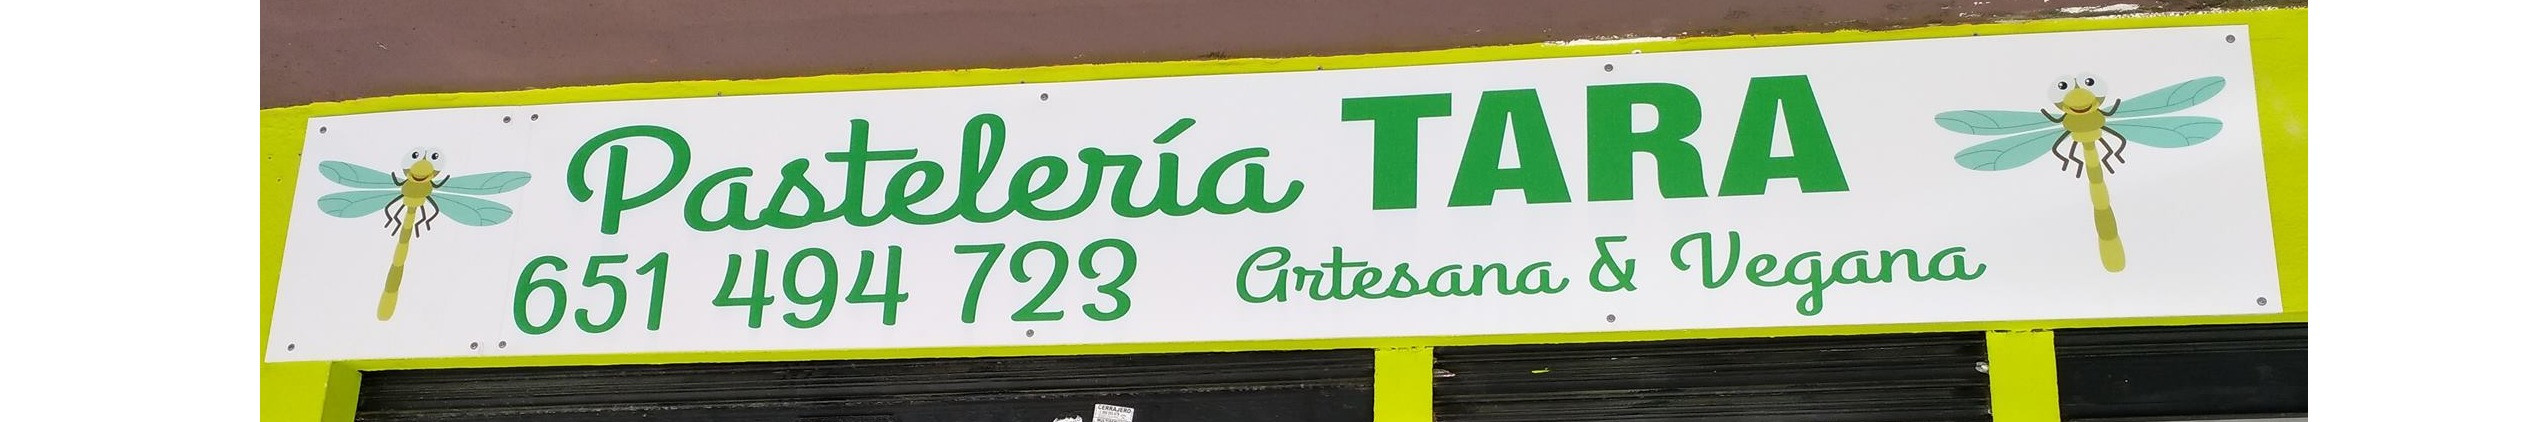 Pastelería Tara Artesana y Vegana